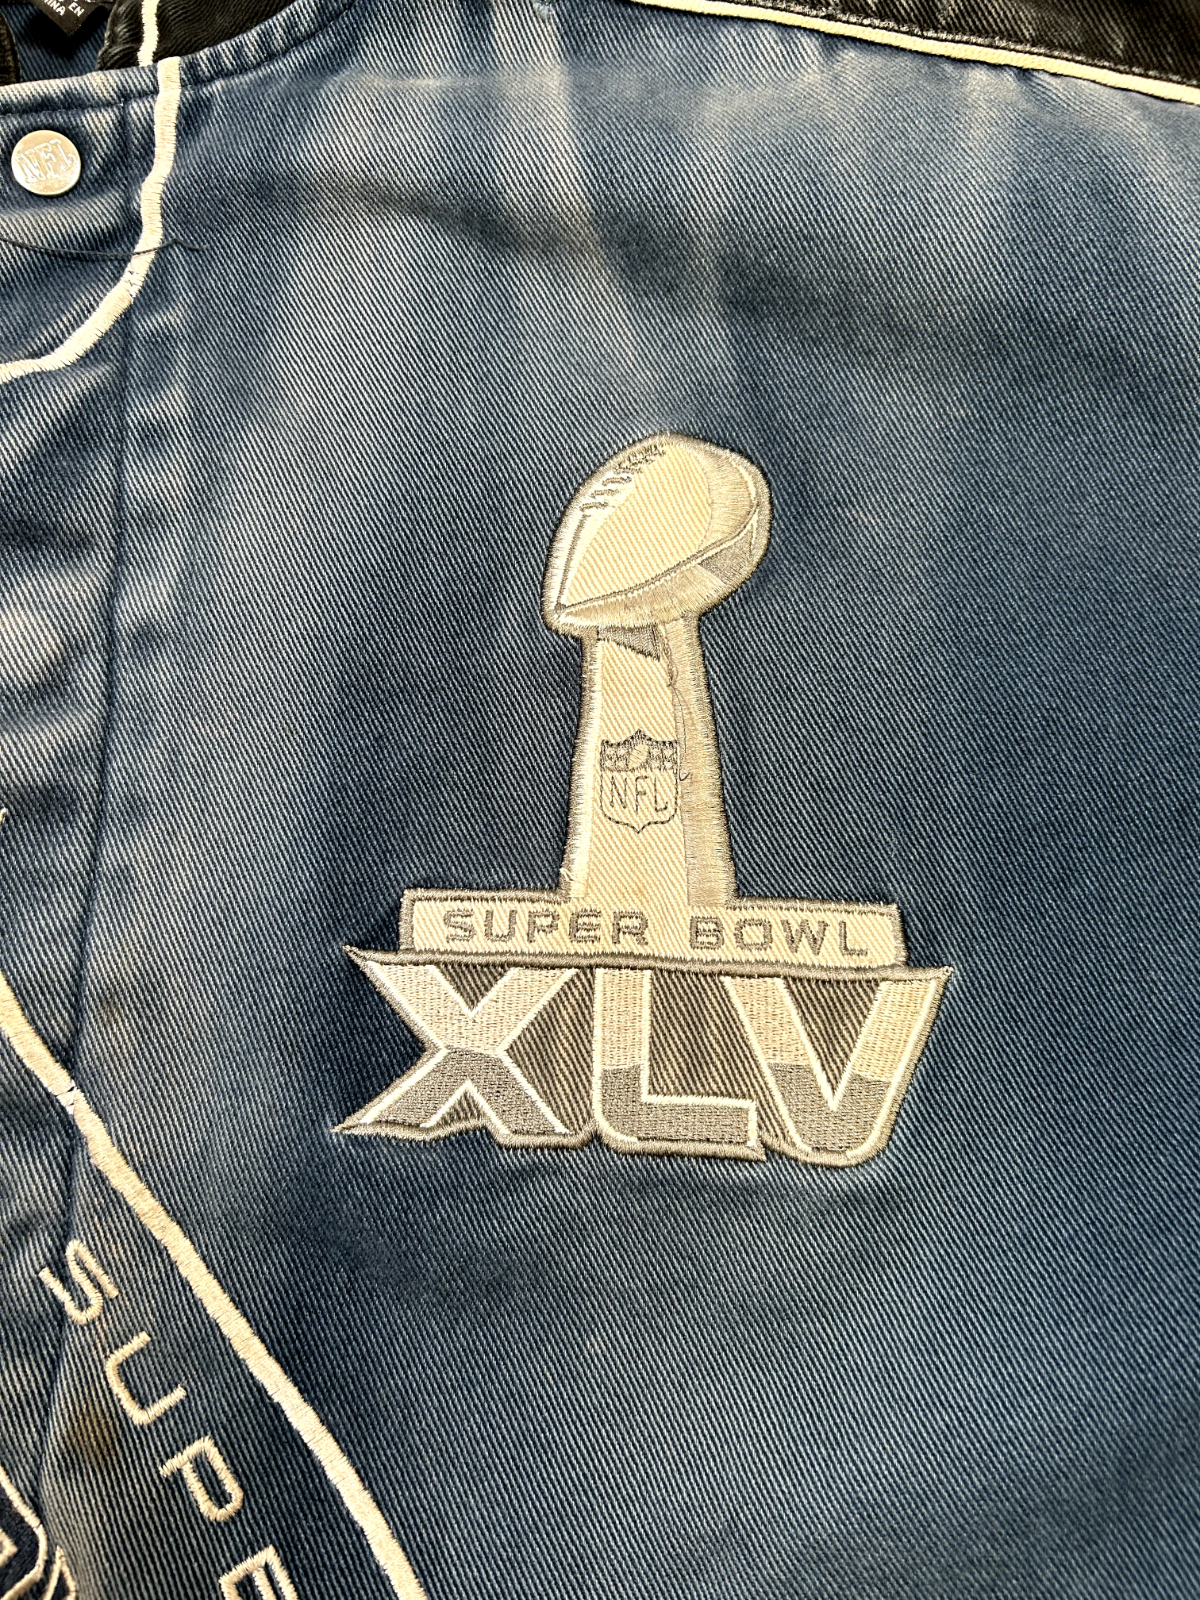 2011 Dallas Cowboys NFL Super Bowl XLV Football Jacket Size 5XL